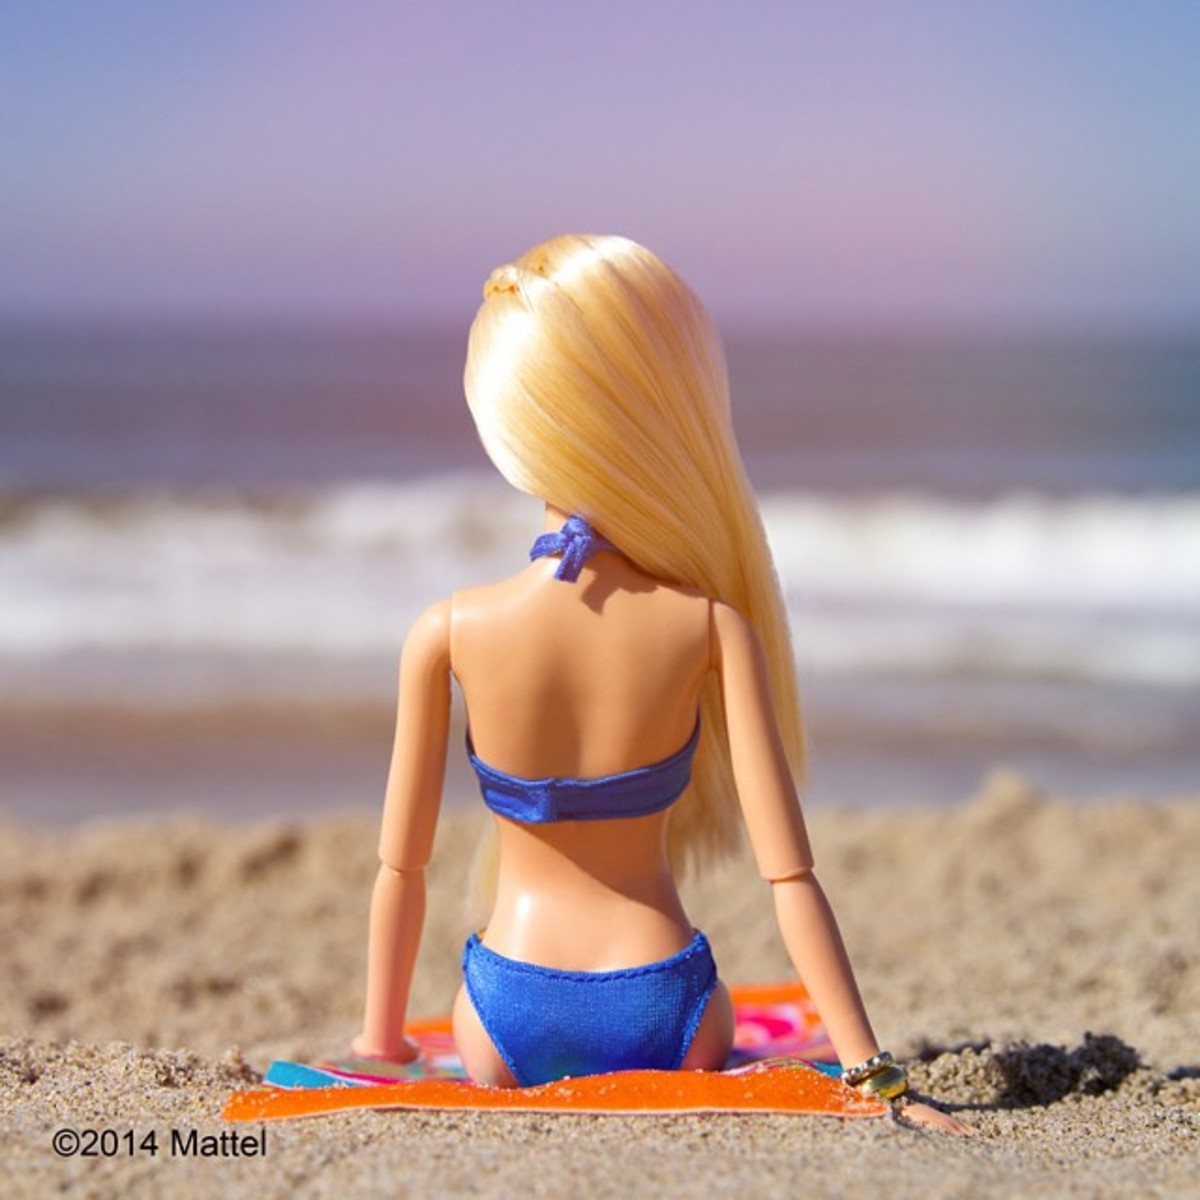 Цікаві сторінки в інстаграмі: лялька Barbie в Instagram